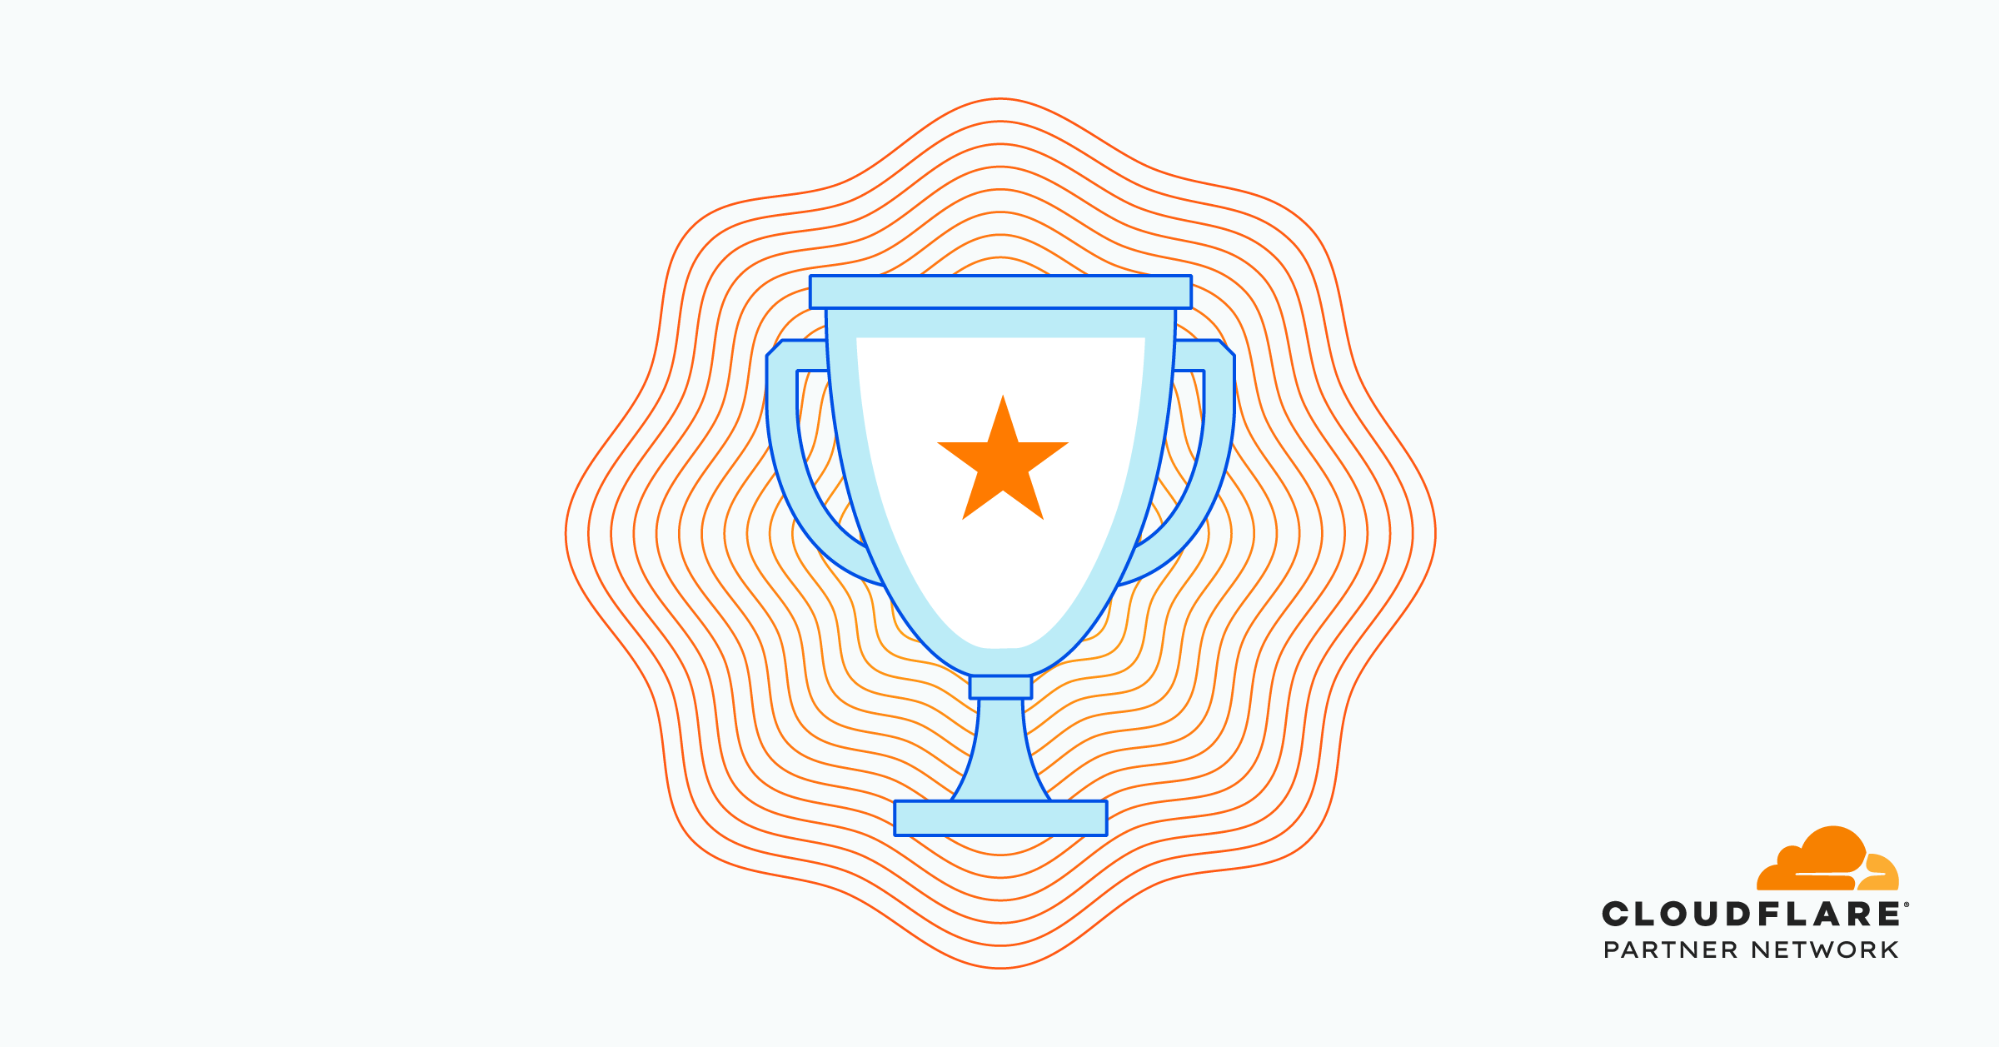 Félicitations aux lauréats              des Partner Awards 2021               
de Cloudflare